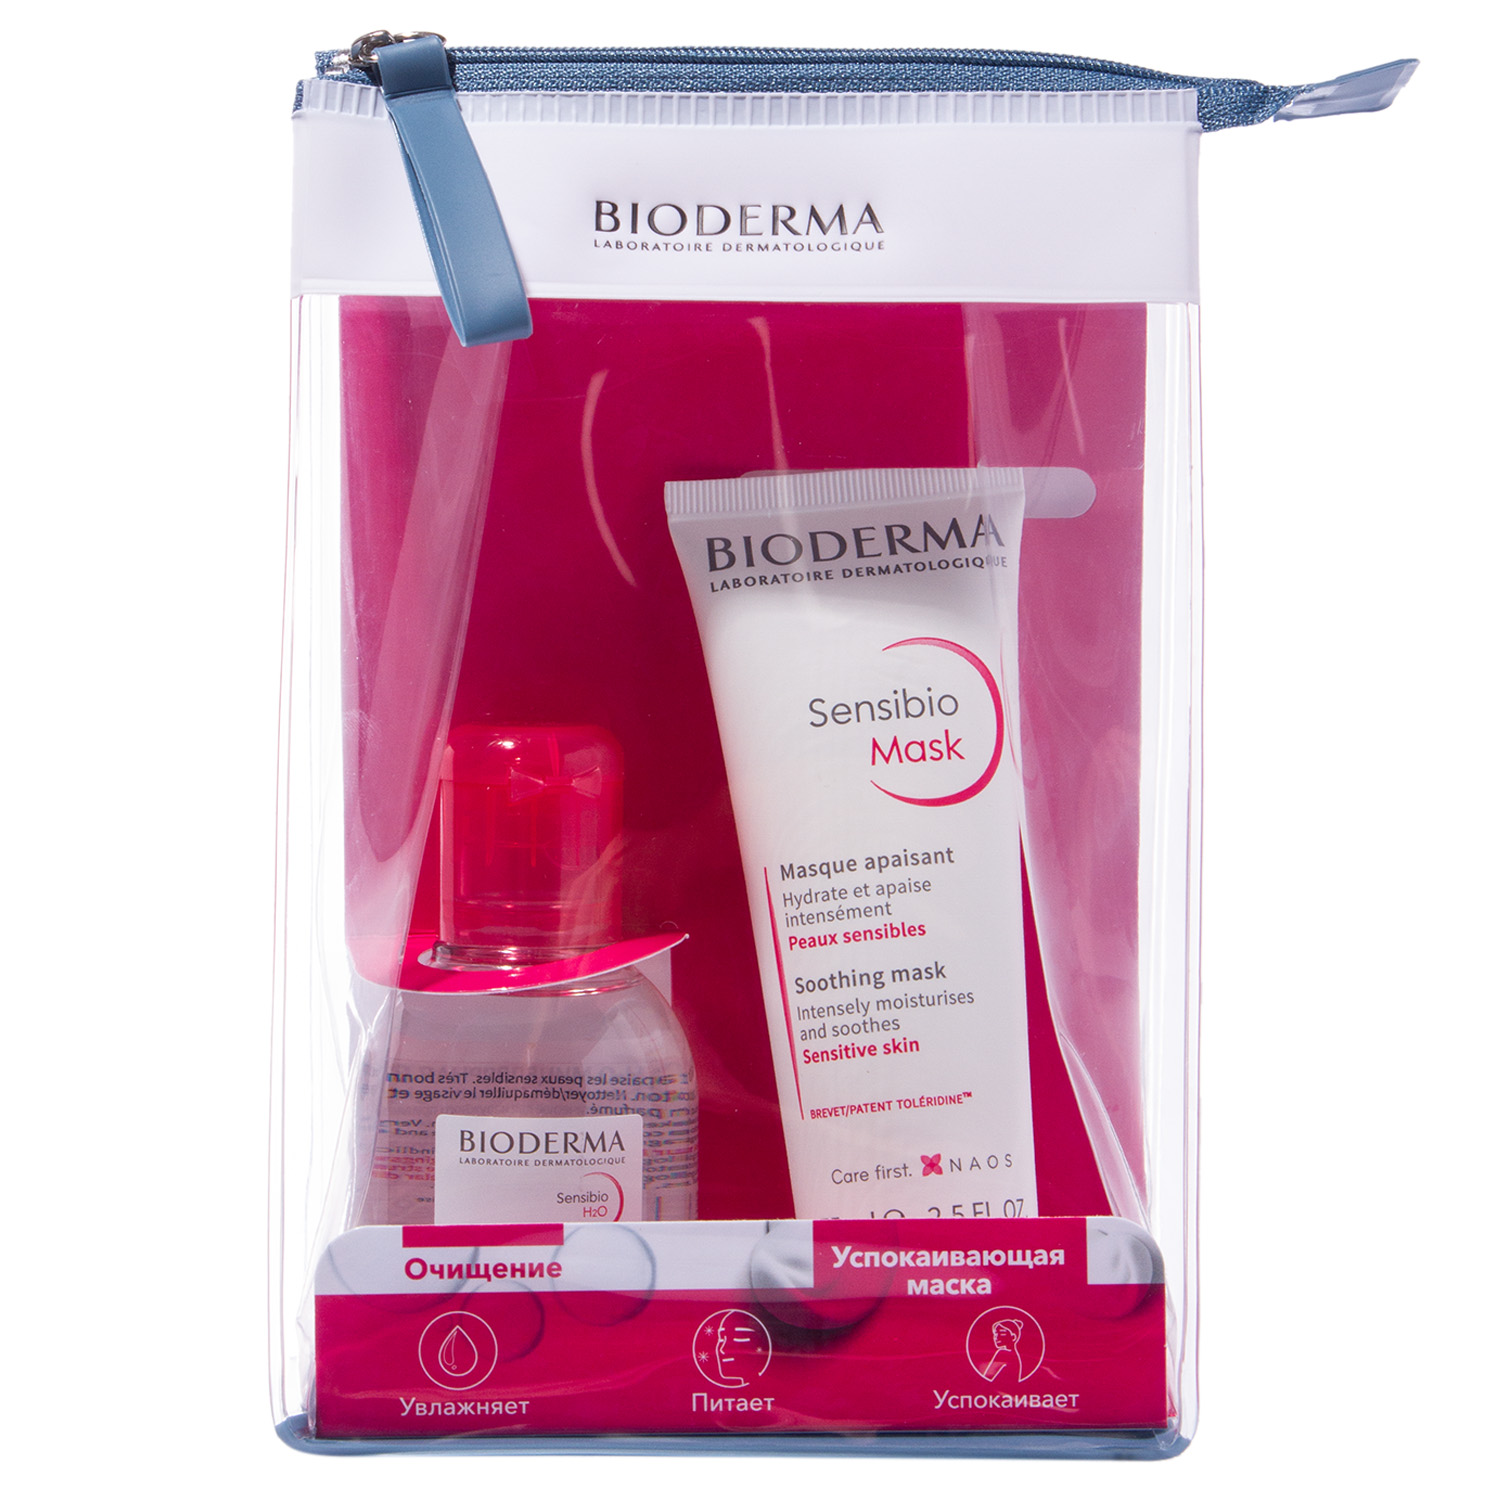 Bioderma Подарочный набор для чувствительной кожи (маска 75 мл + мицеллярная вода 100 мл) (Bioderma, Sensibio)